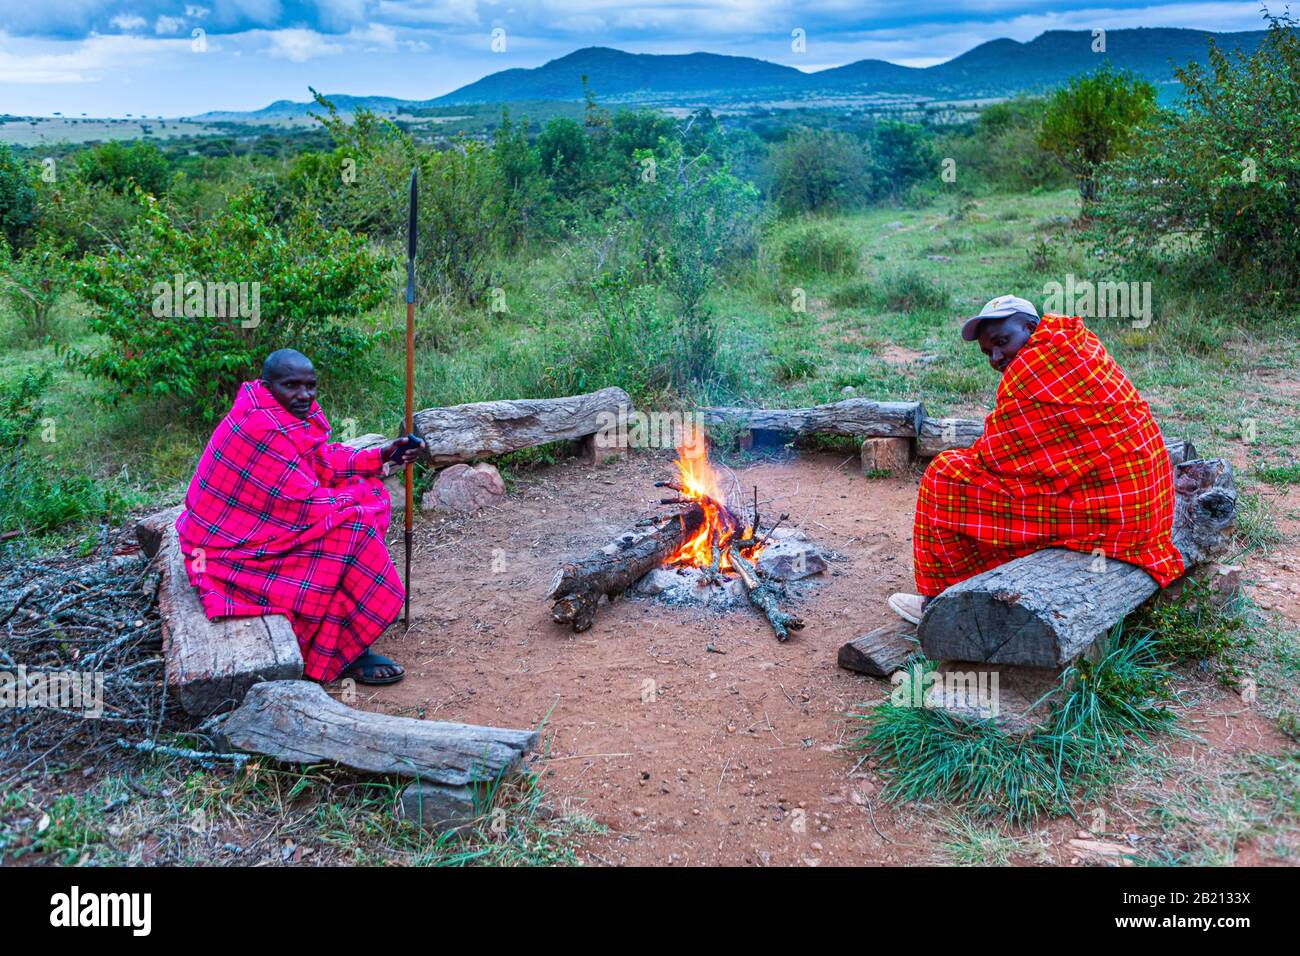 Maasai men around a campfire, Masai Mara National Park, Kenya Stock Photo